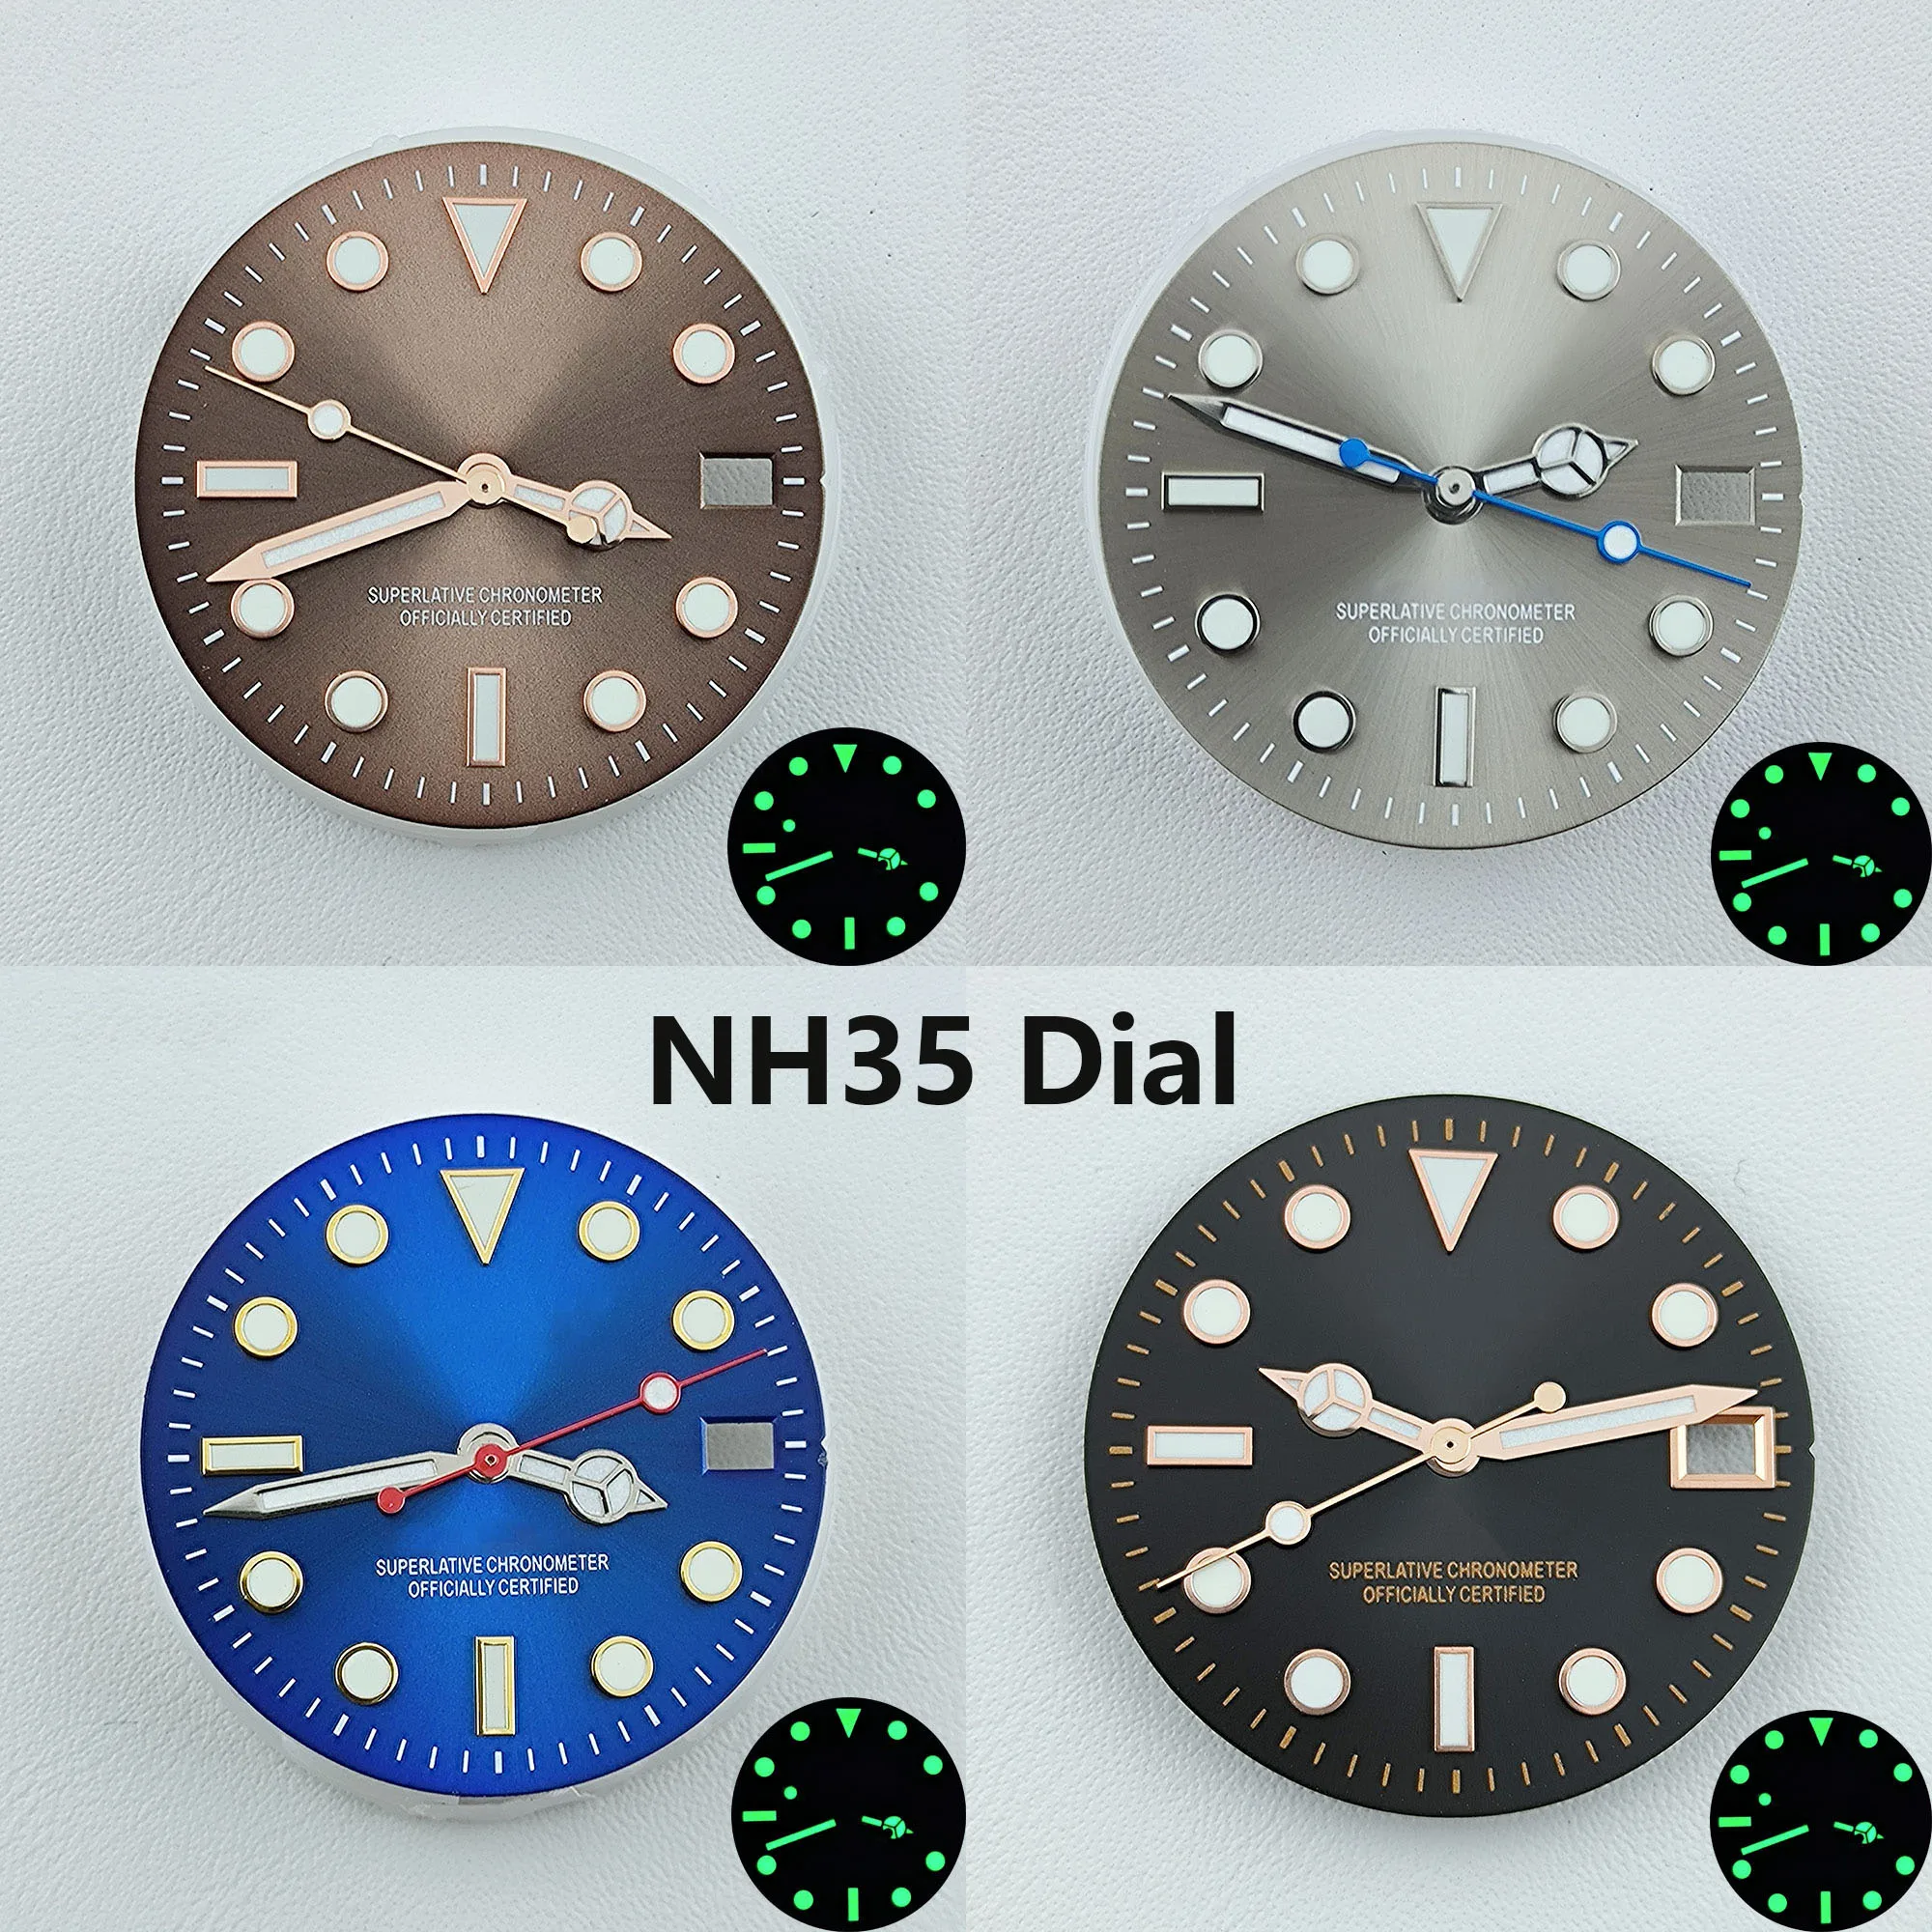 NH35 dial cadran de Ceas S cadran verde Luminos dial Potrivit pentru NH35 NH36 mișcare accesorii ceas